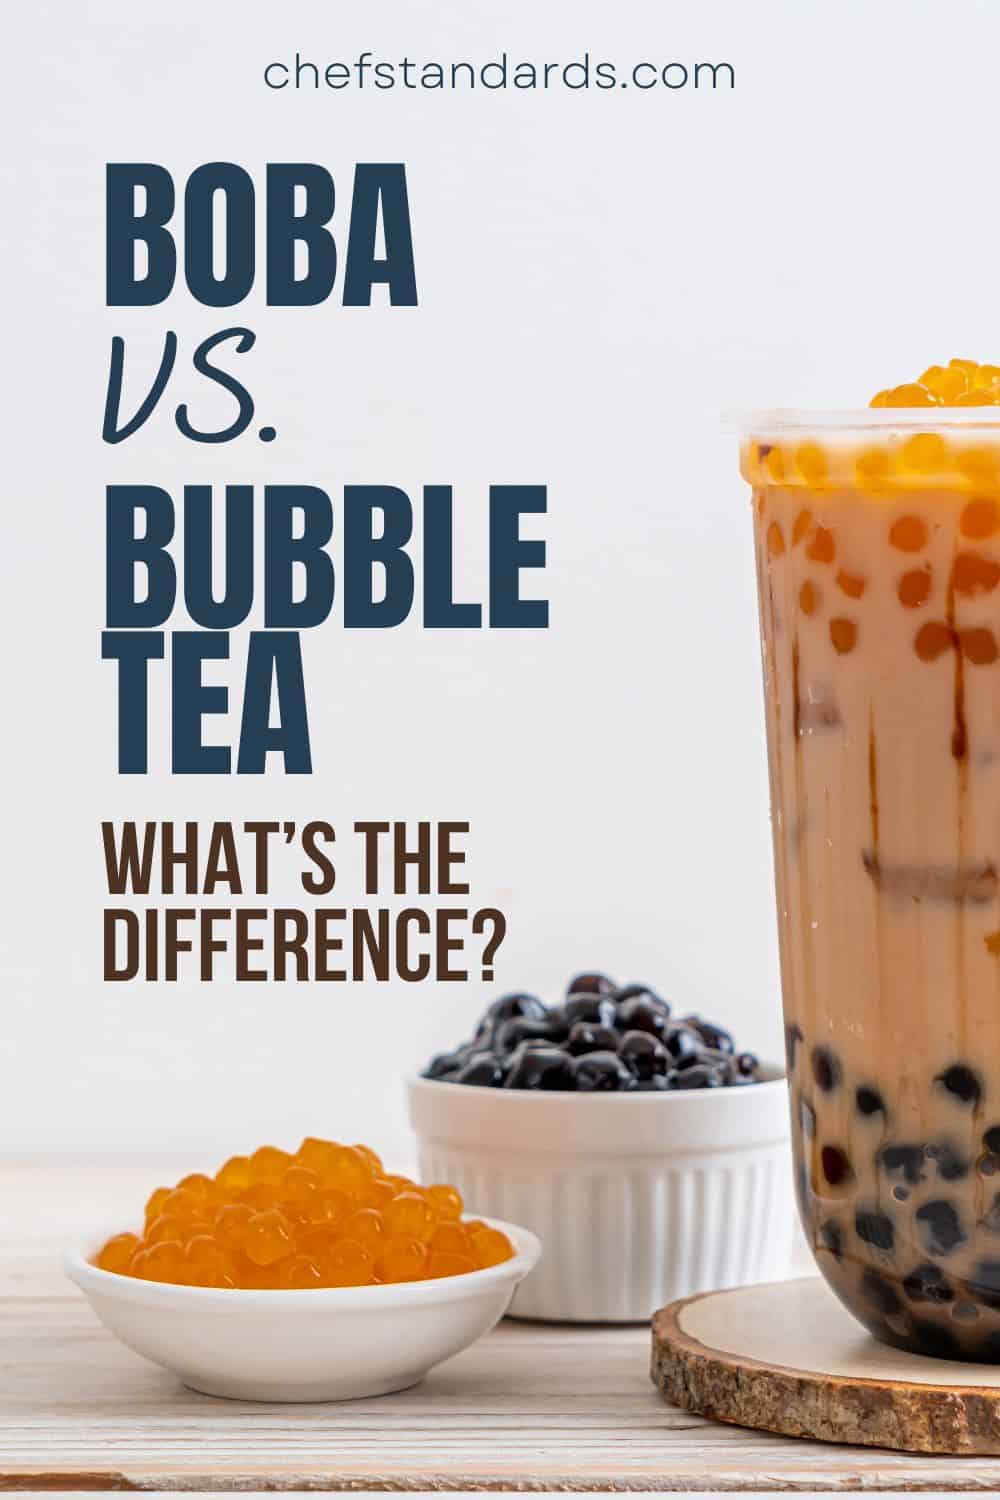 Gibt es einen Unterschied zwischen Boba und Bubble Tea?